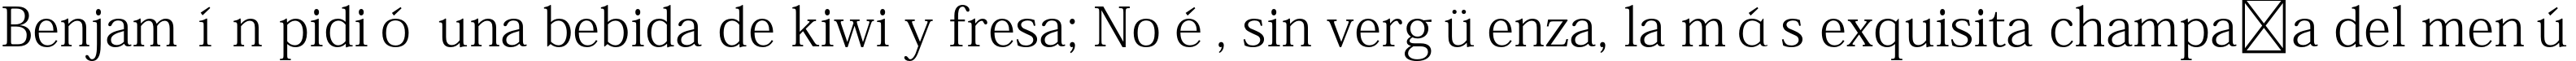 Пример написания шрифтом Adobe Fangsong Std R текста на испанском